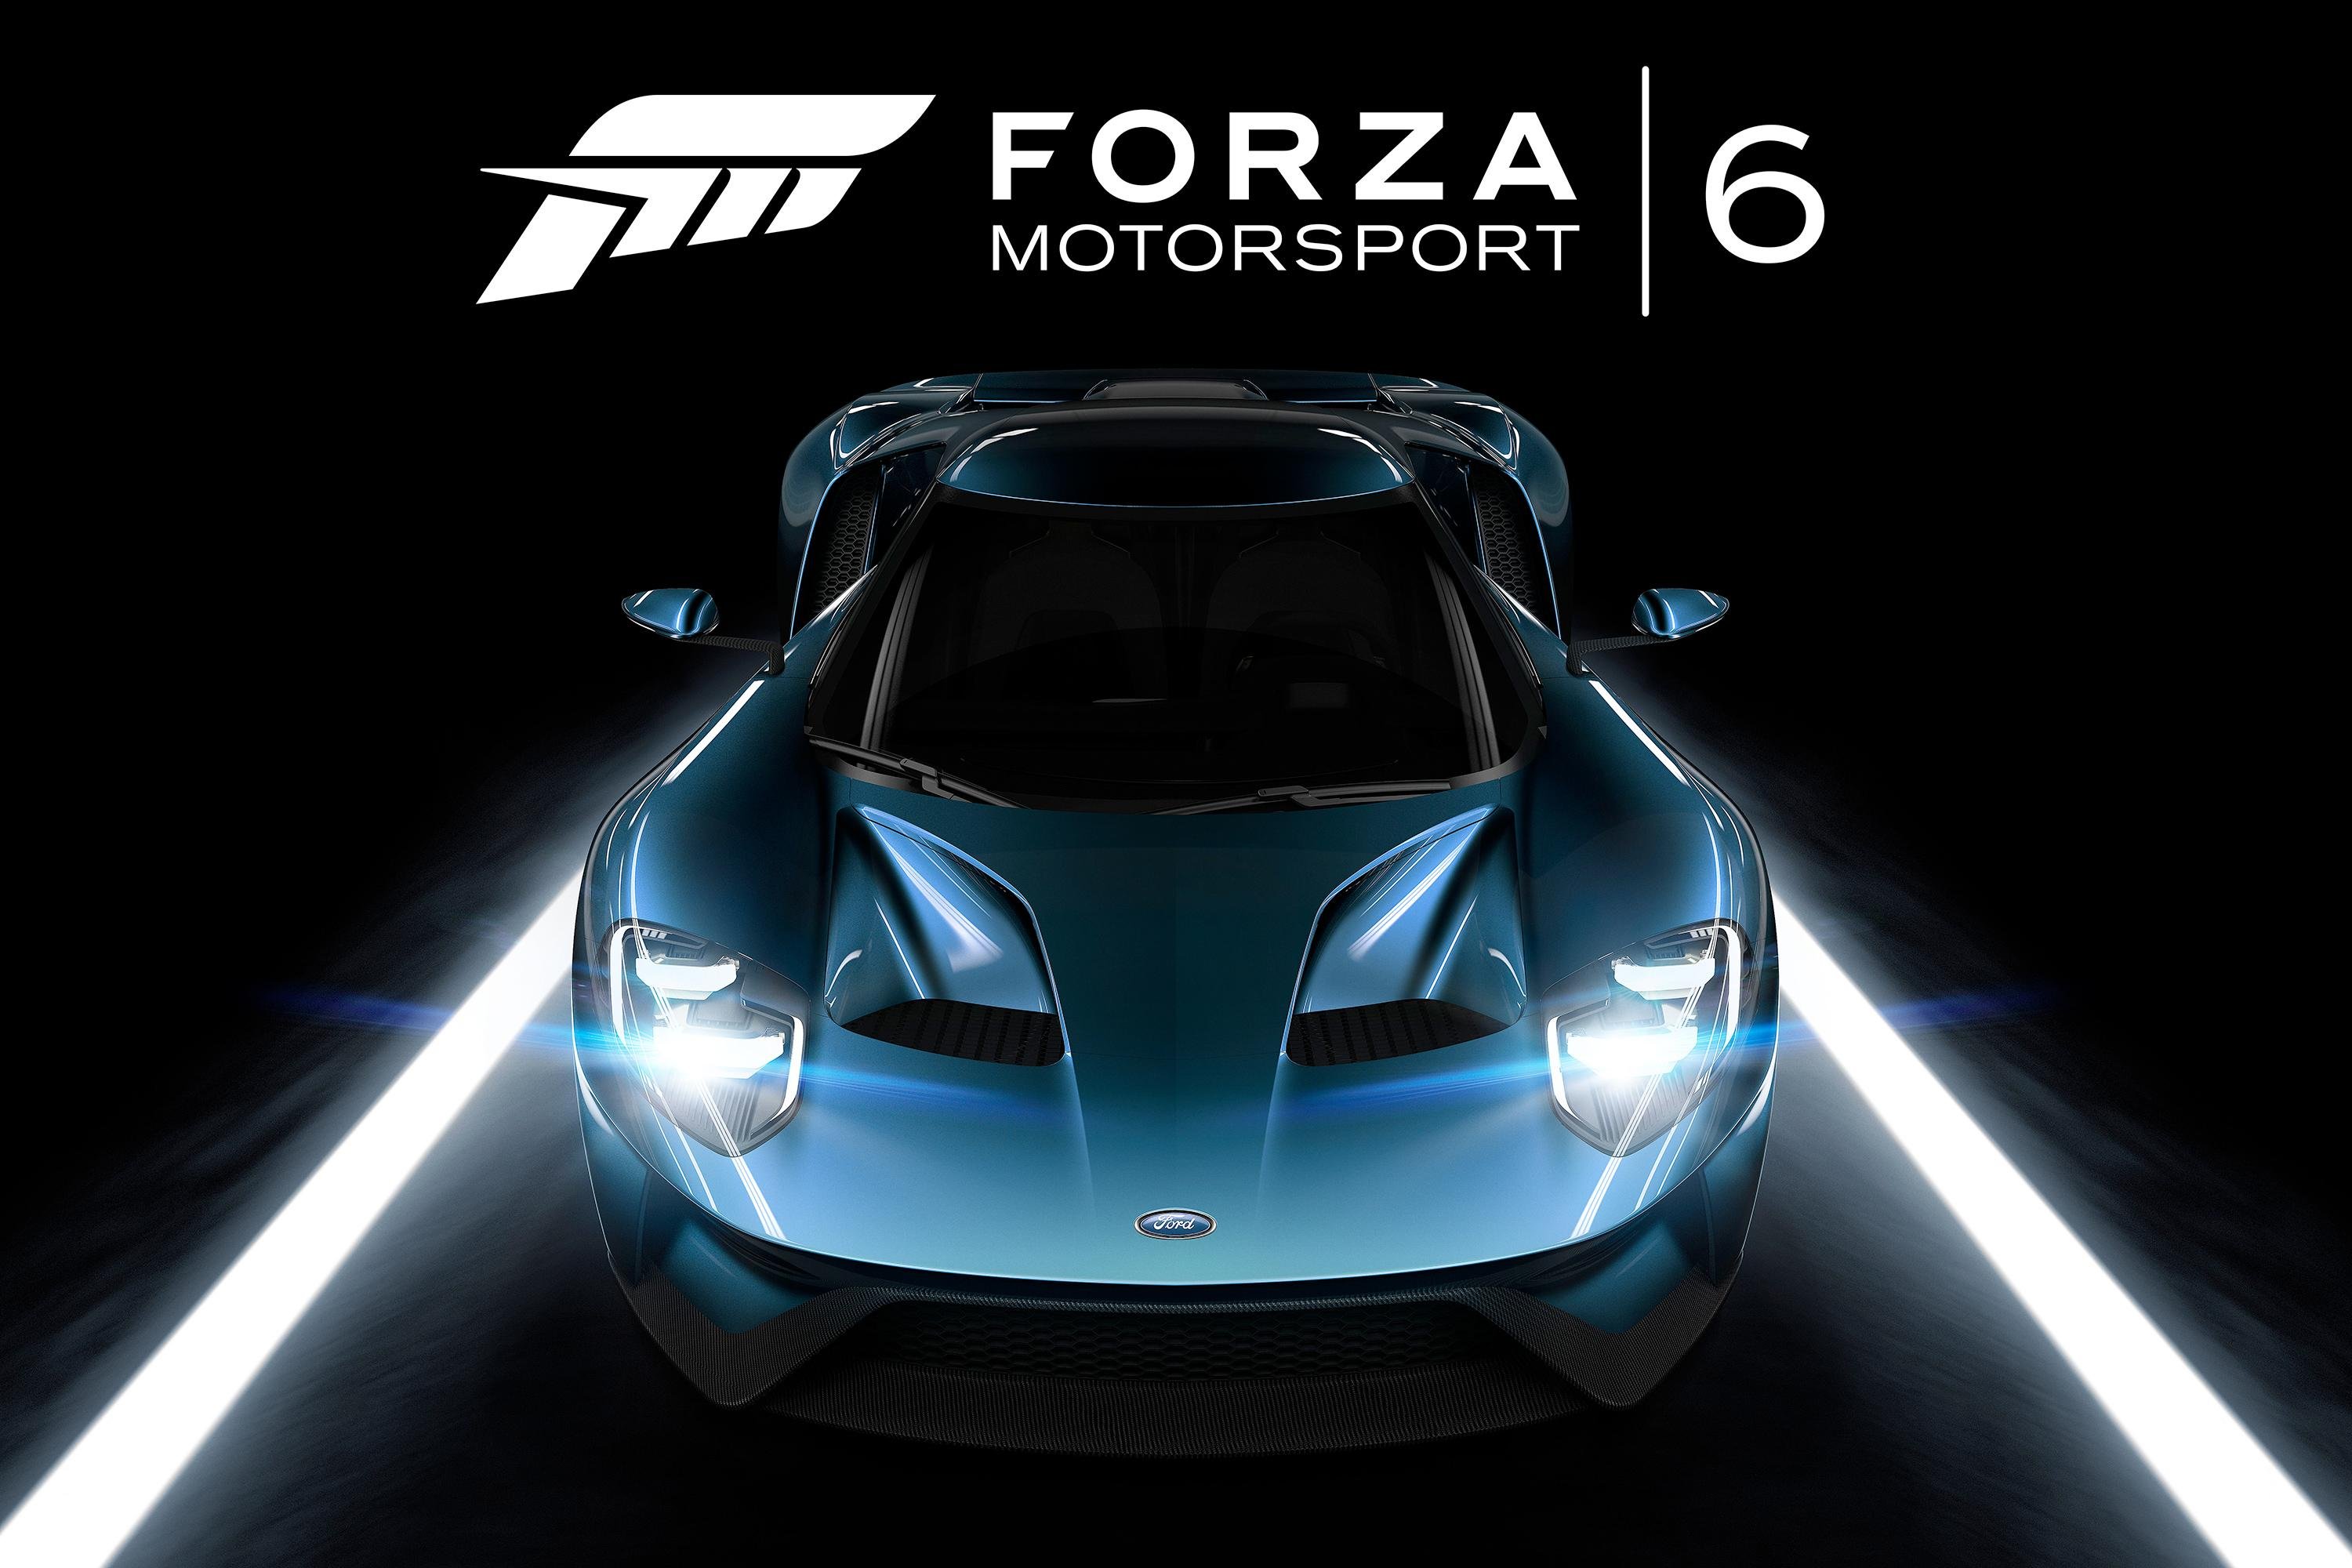 forza motorsport 6 apex beta download torrent